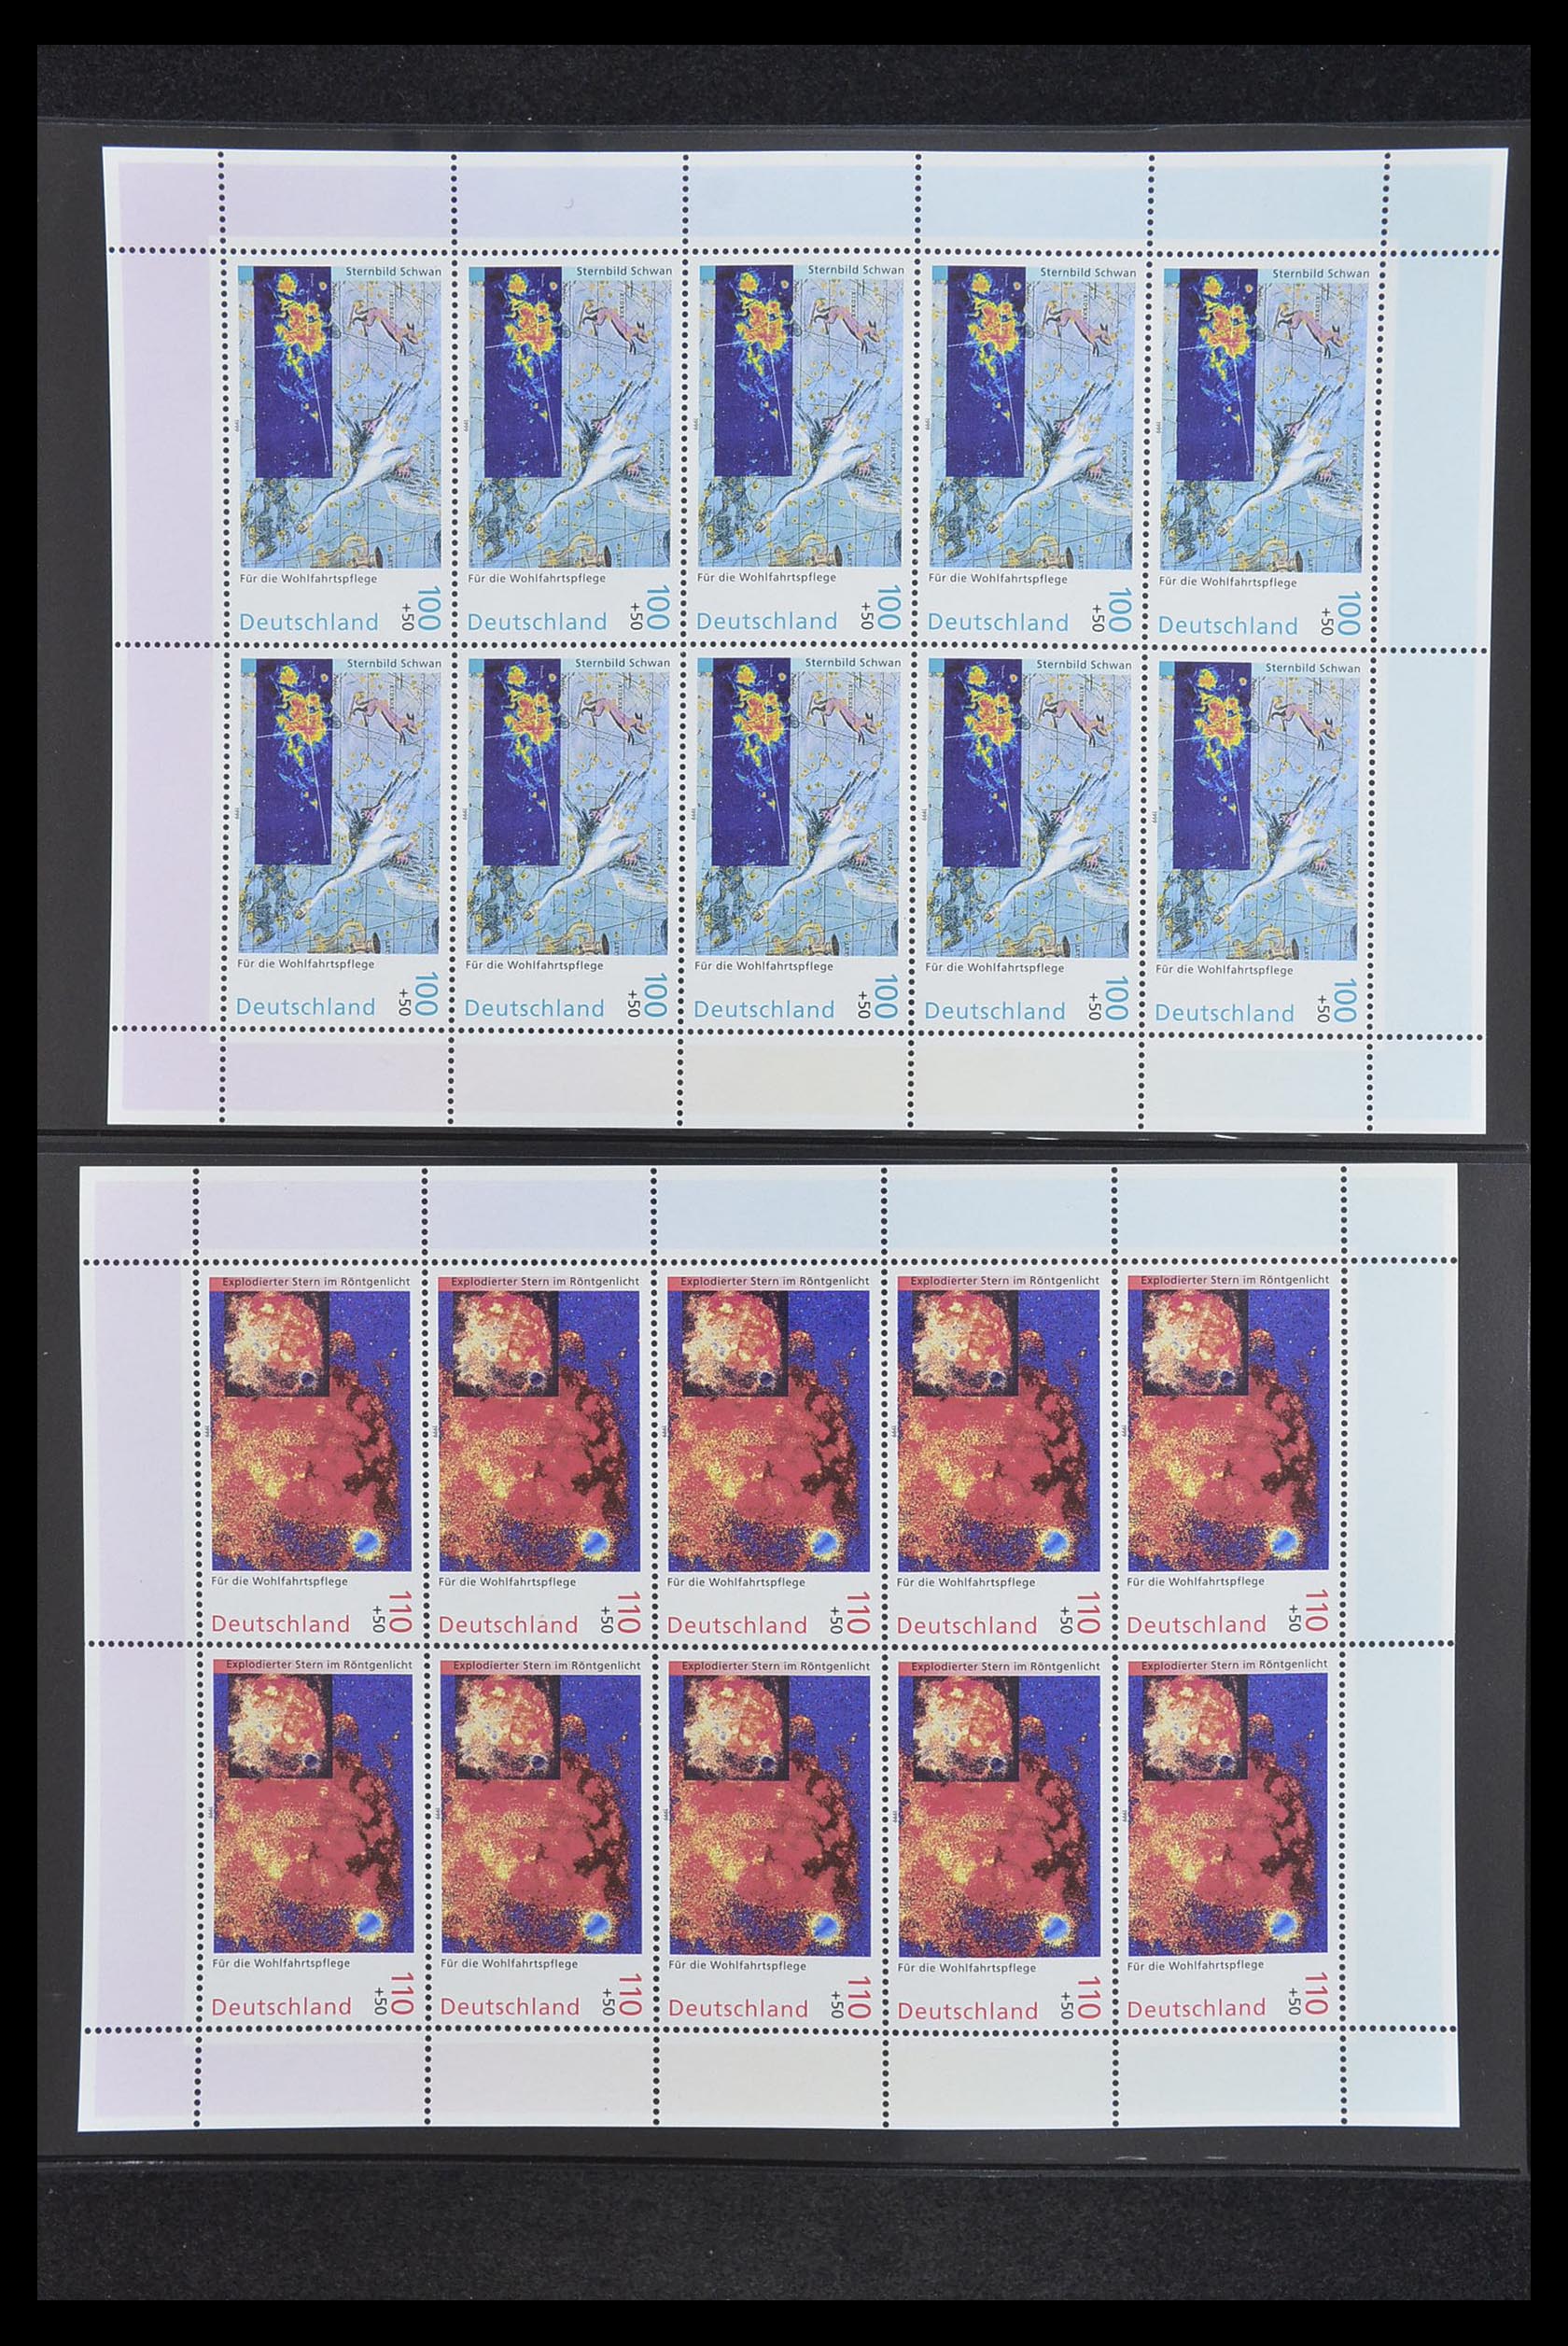 33936 141 - Stamp collection 33936 Bundespost kleinbogen 1994-2000.